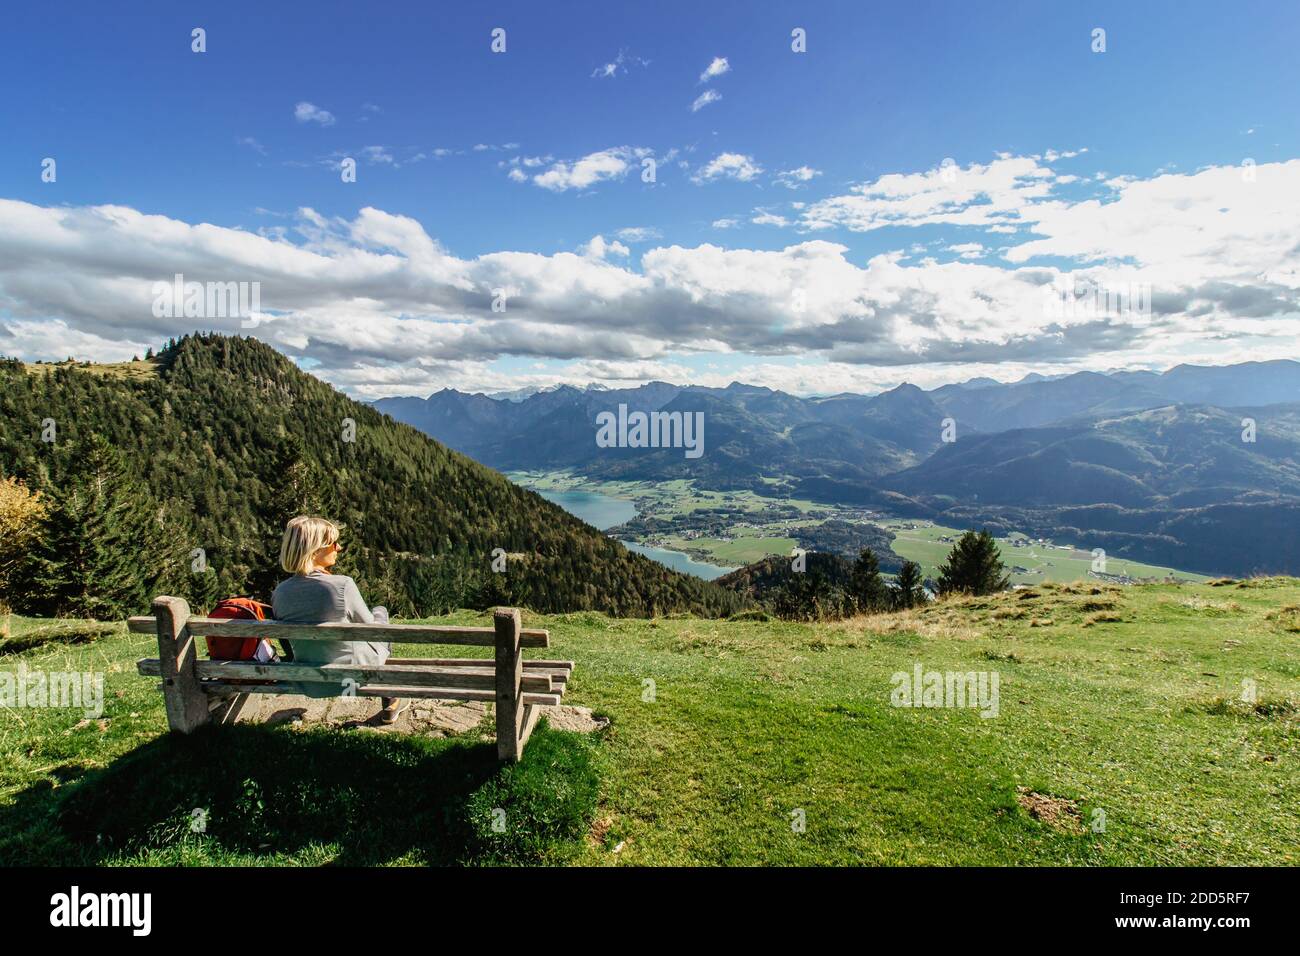 Ragazza godendo di vista del panorama di montagna e lago alpino, Austria.Backpacker relax Sul summit.Active vacanza libertà concetto.Wanderlust viaggio Foto Stock